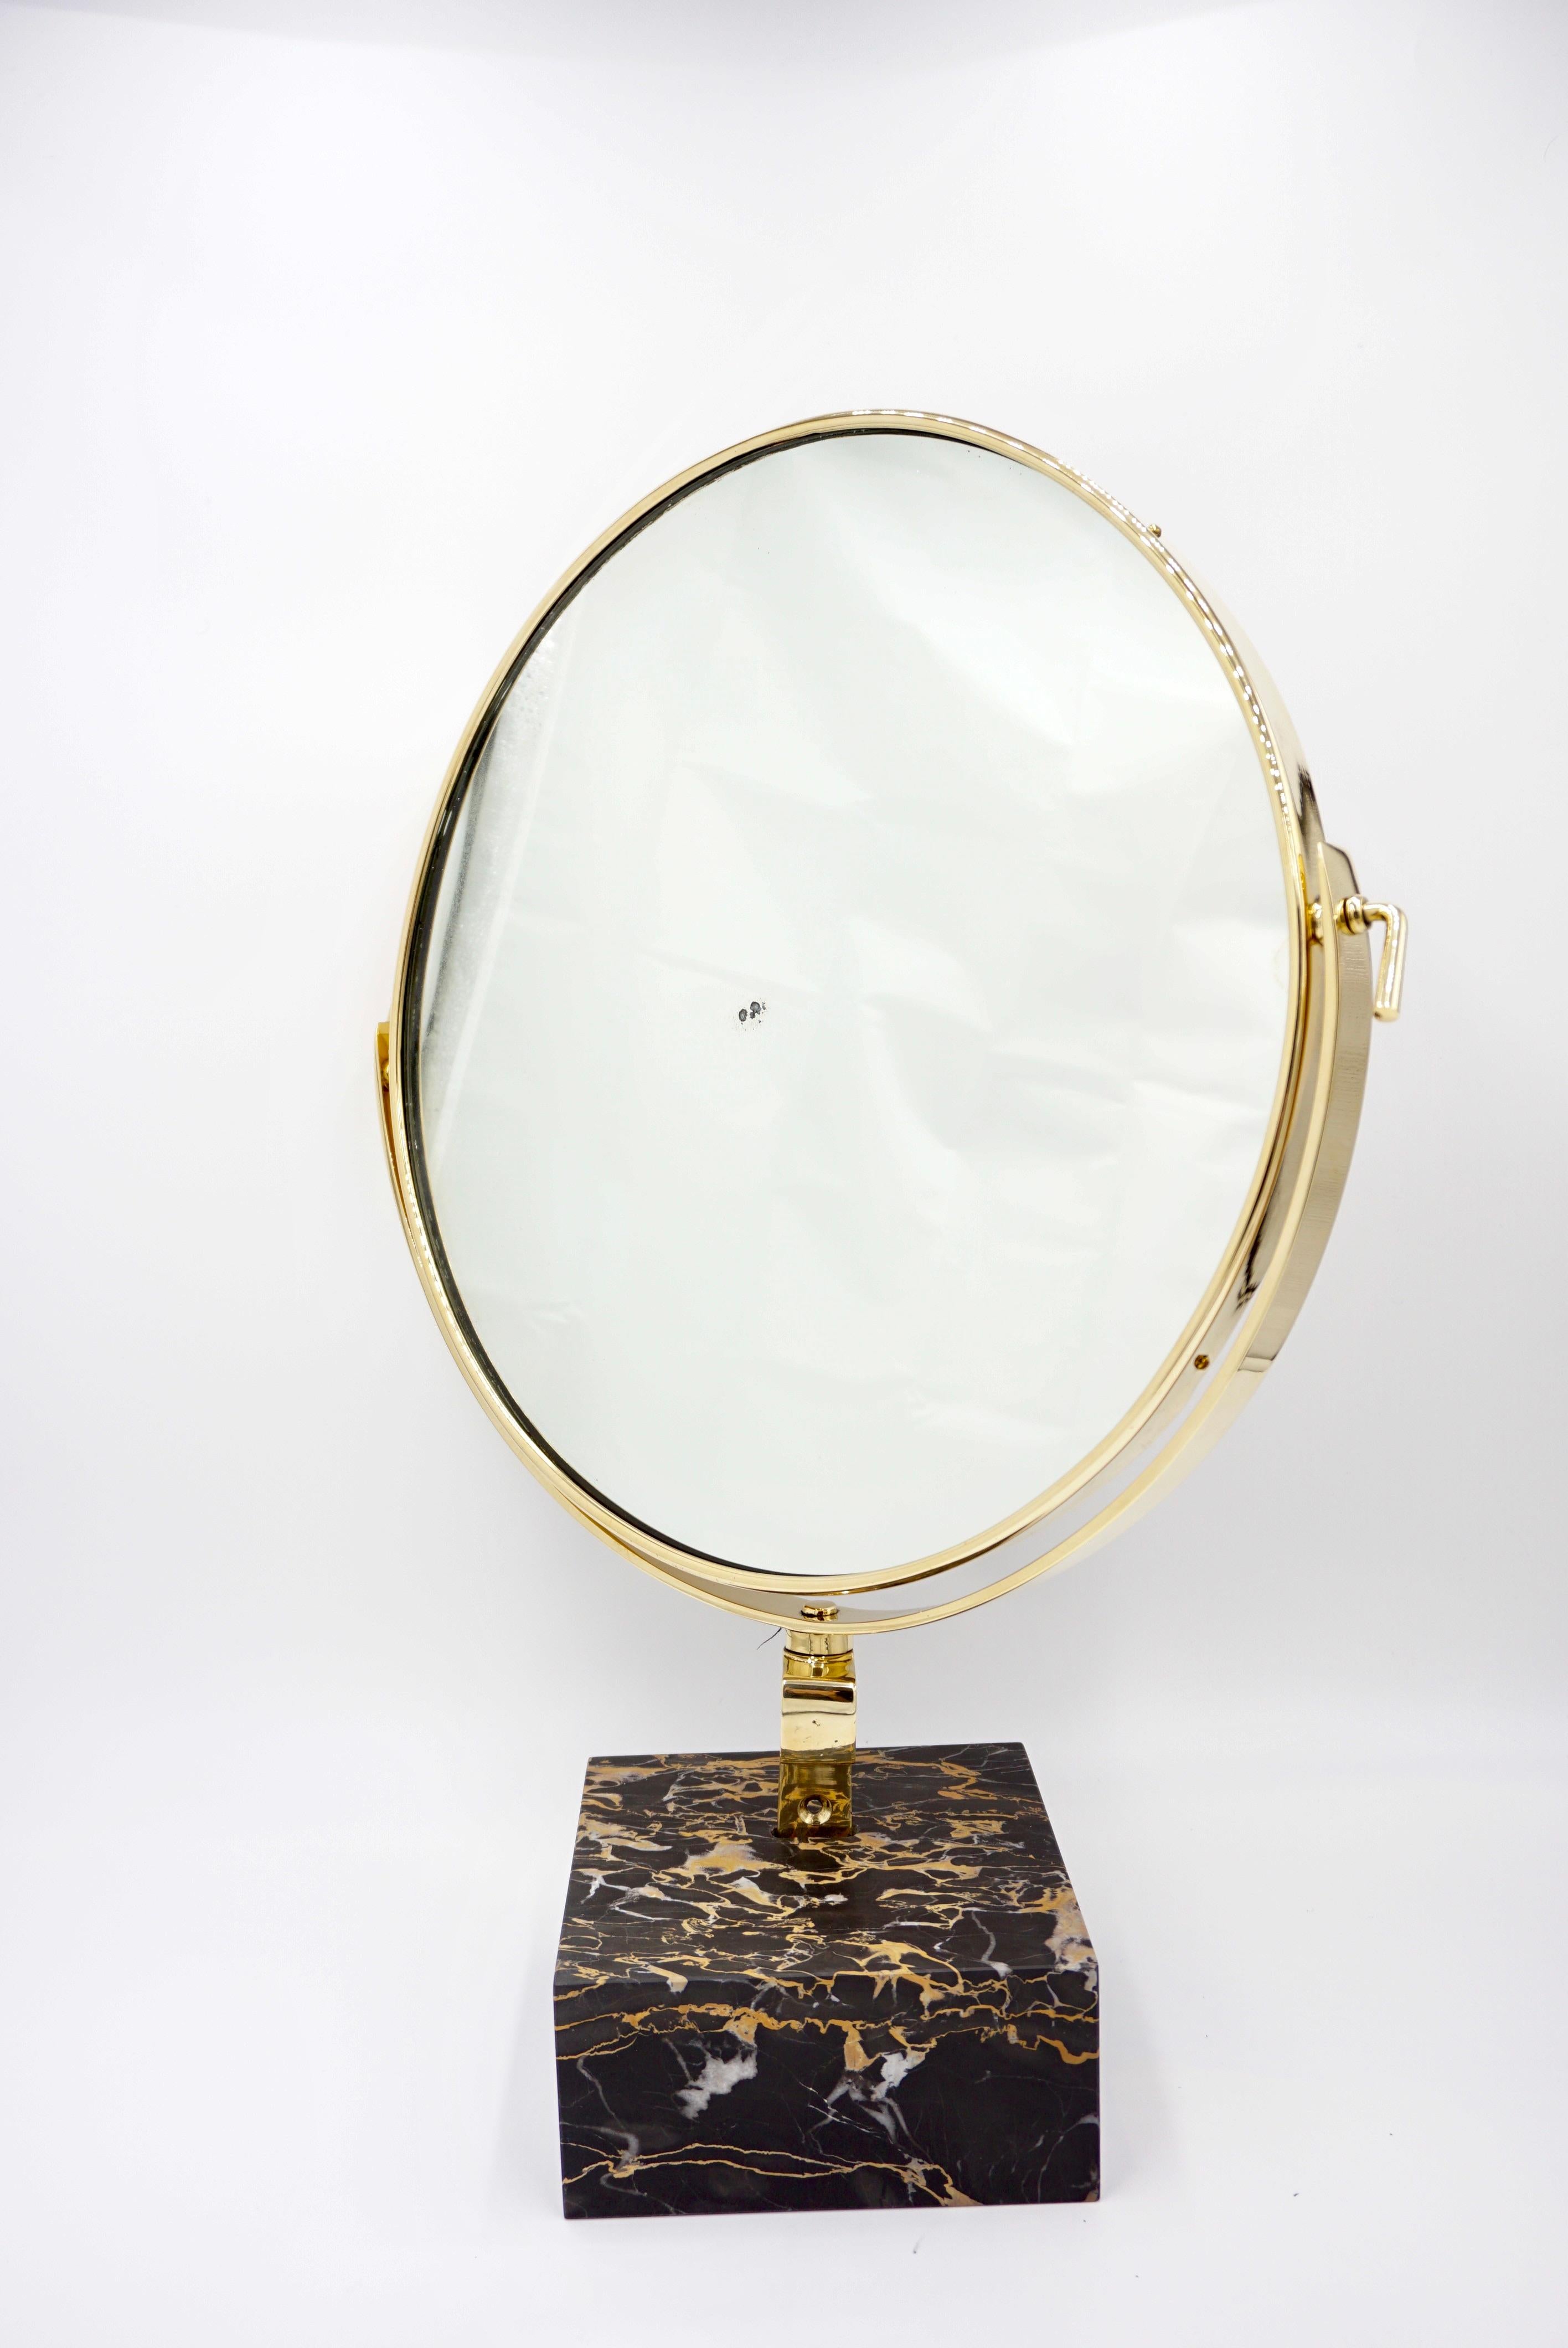 Miroir de courtoisie conçu par Gio Ponti pour la vanité de l'Hôtel Royal, Naples, 1955 et produit par Fontana Arte en 1955. 
édition limitée
Pièce originale ( dans un bureau du mobilier de l'Hôtel Royal) personnalisée par CG avec support en marbre